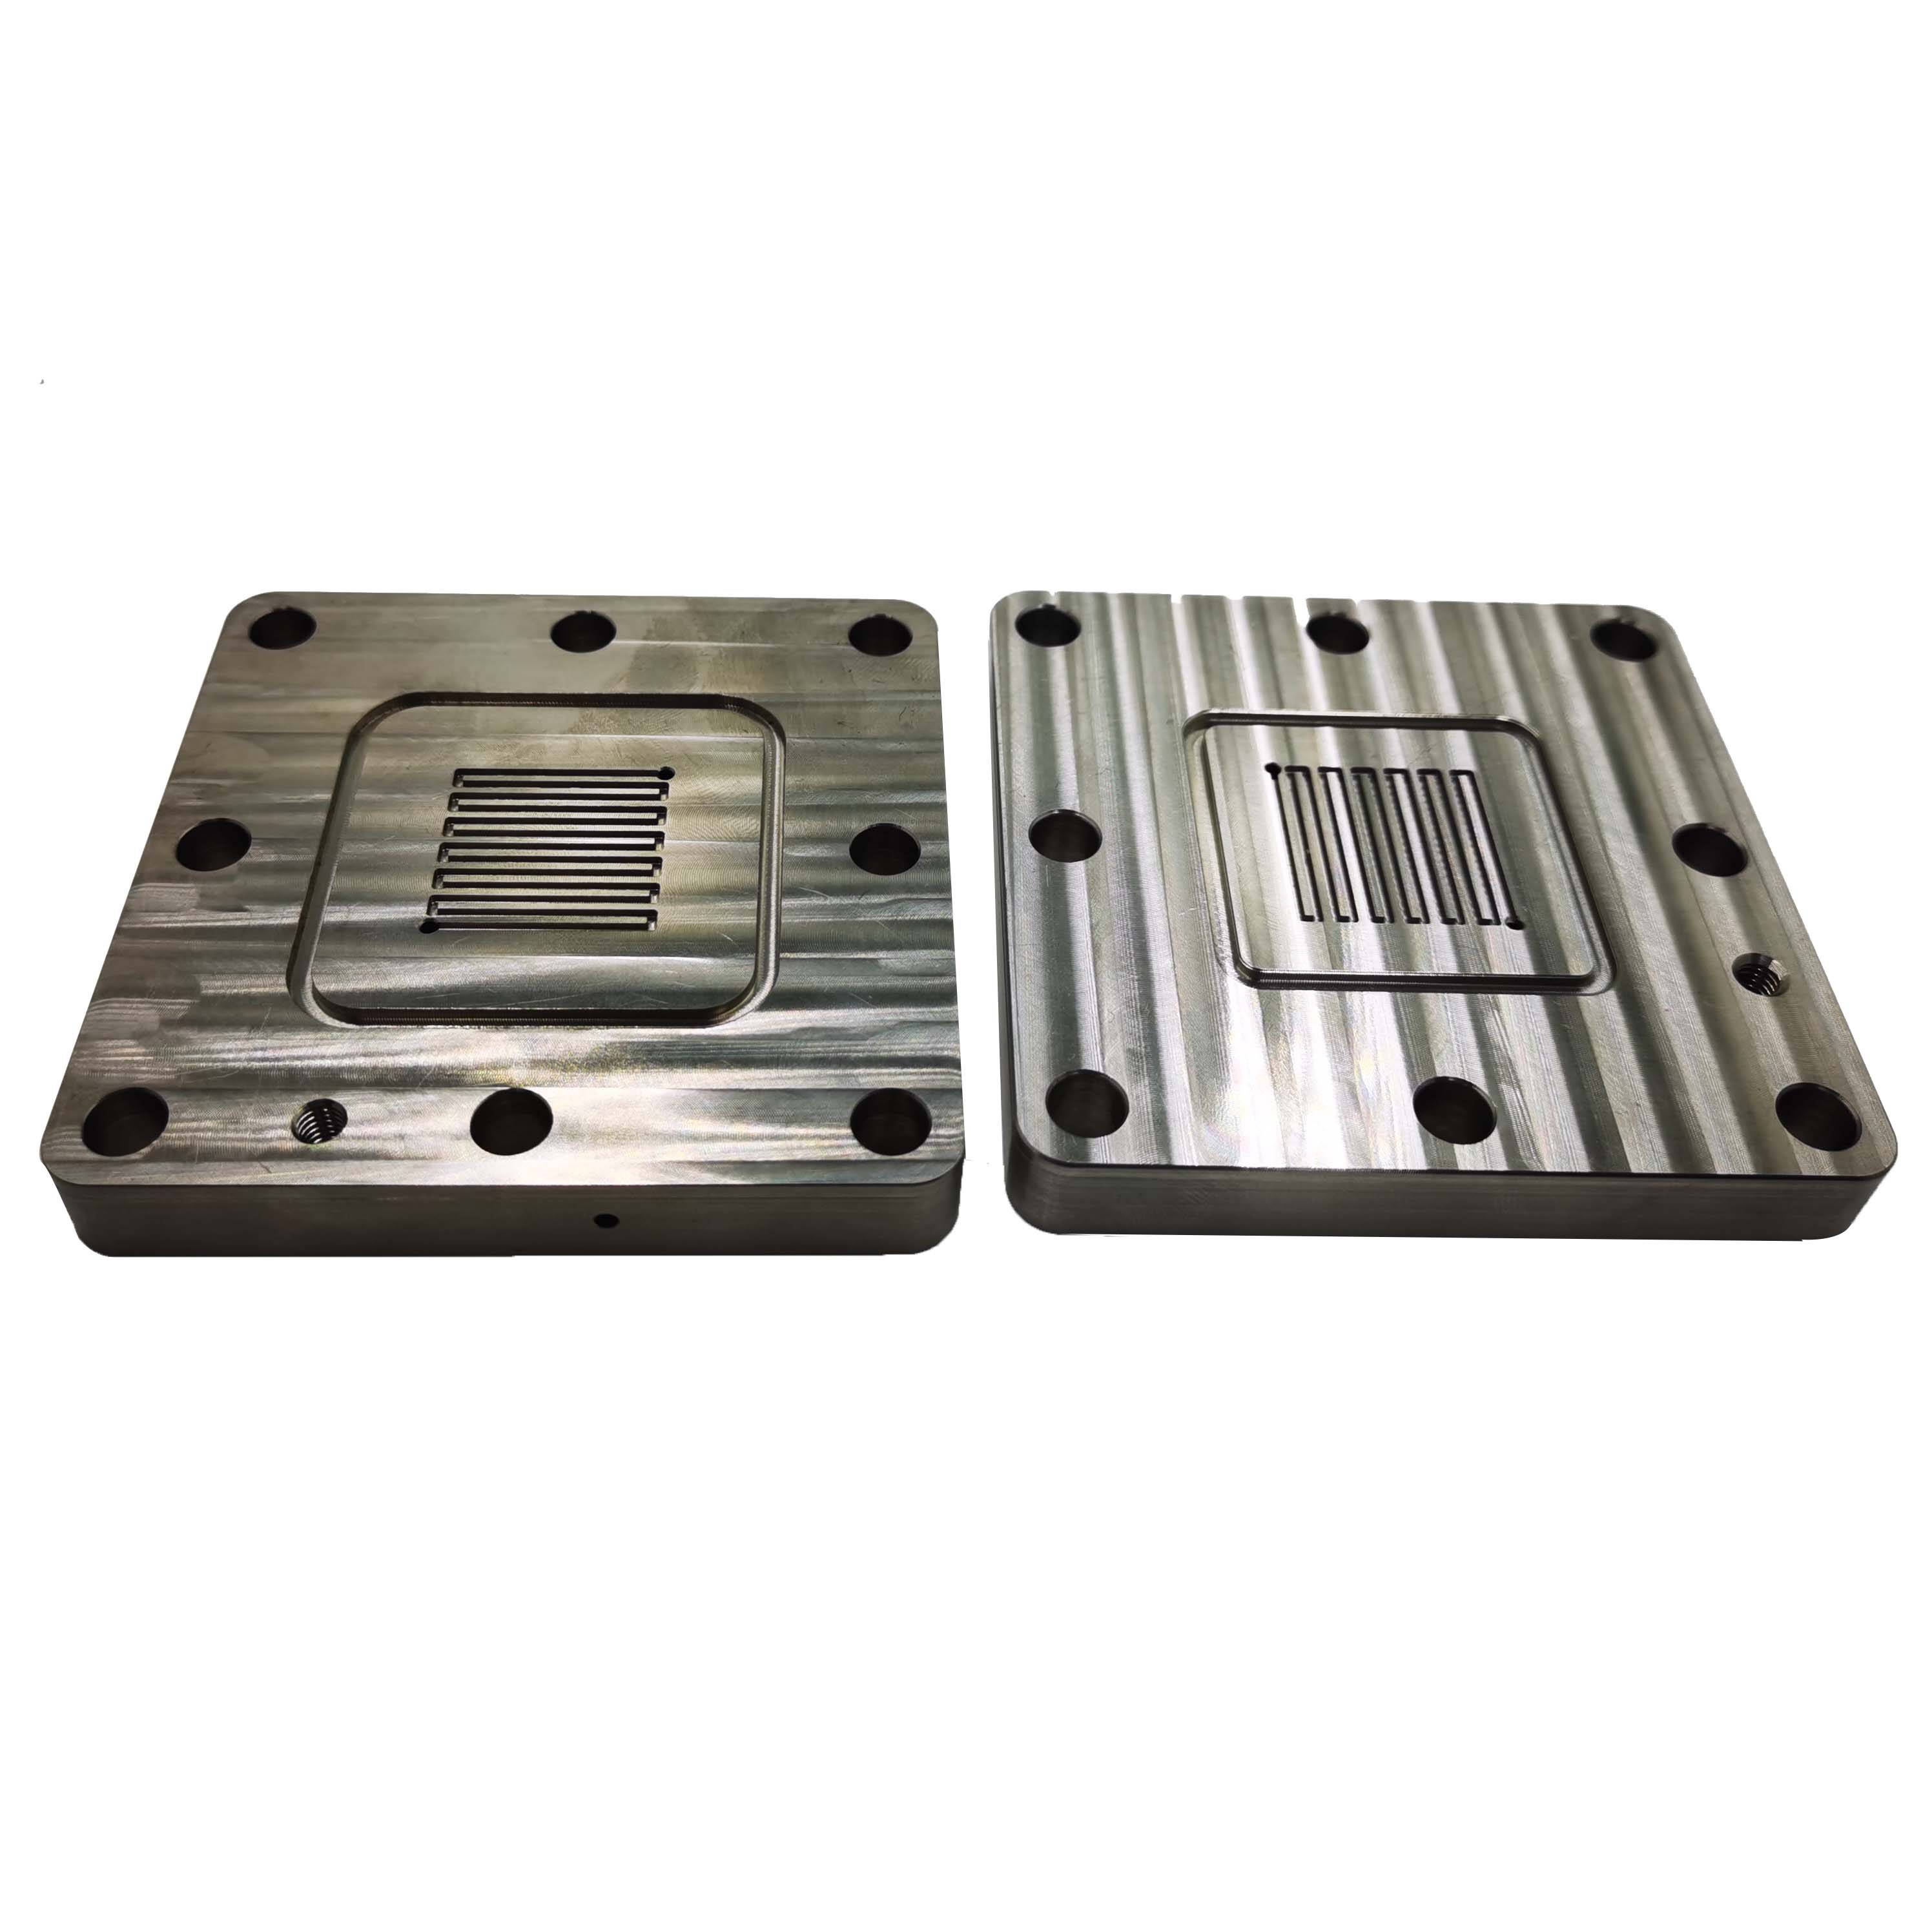 Titanium VS Aluminum, For CNC Machining Project